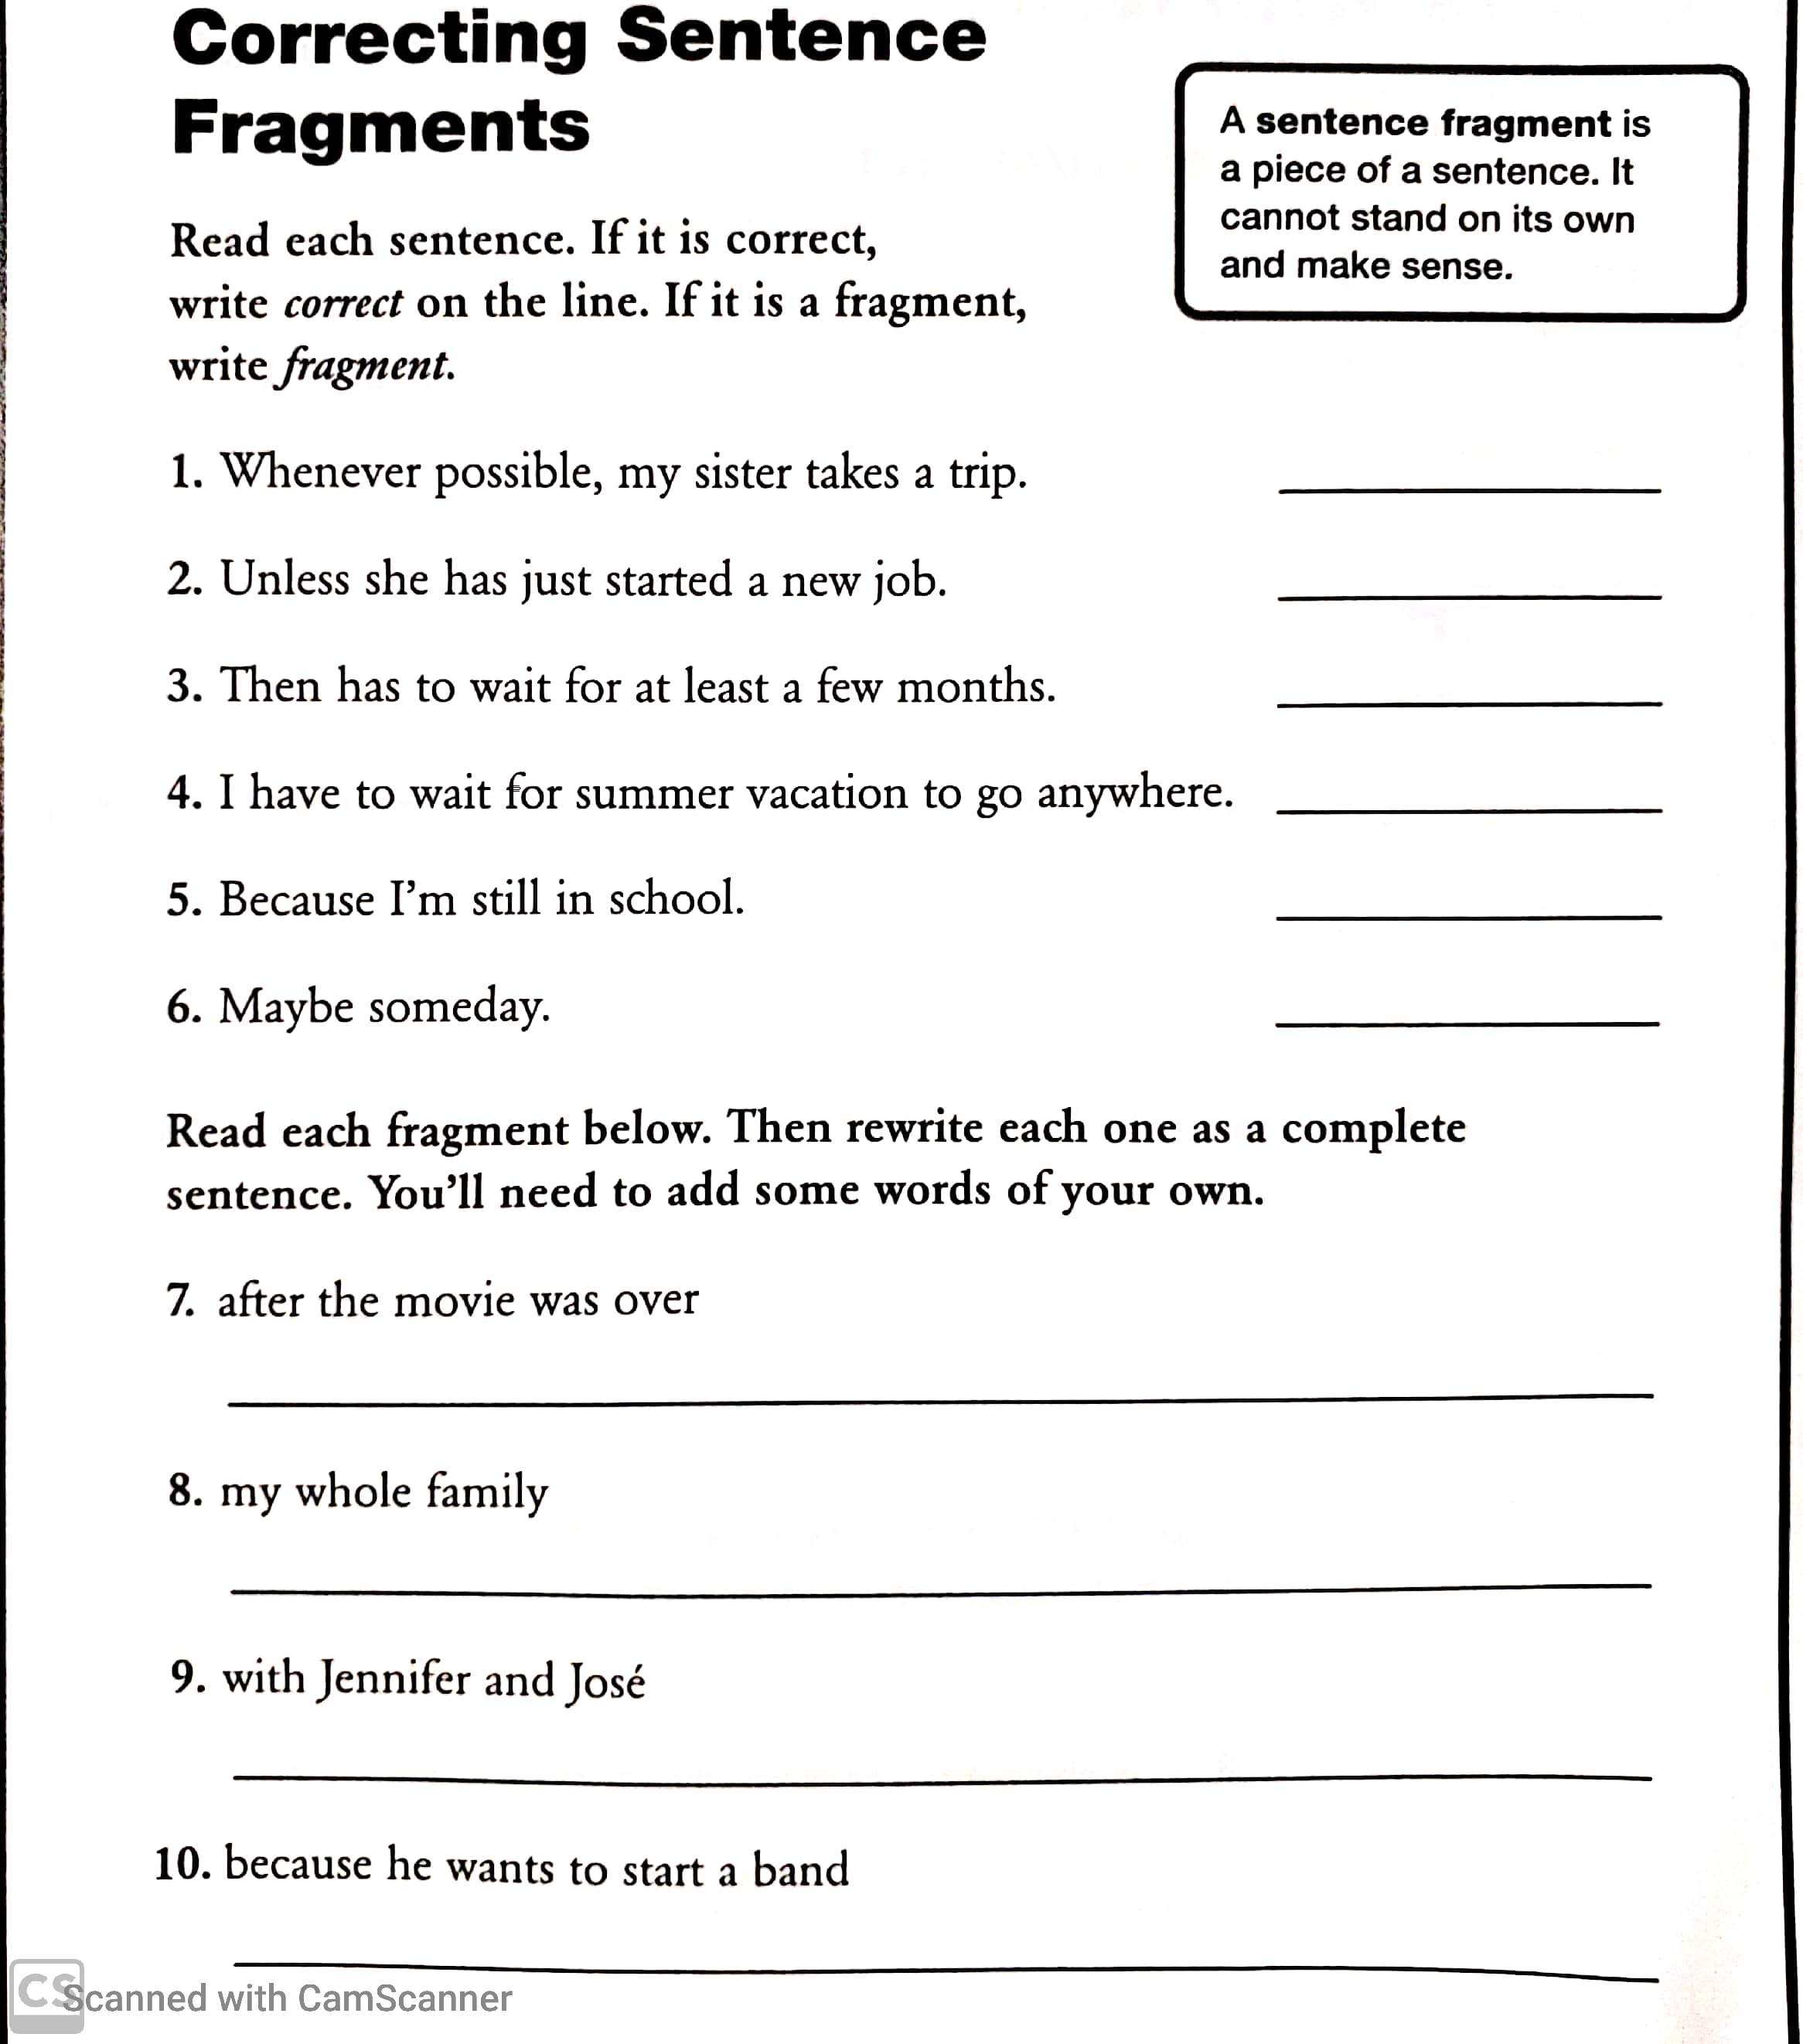 fragment-or-sentence-worksheet